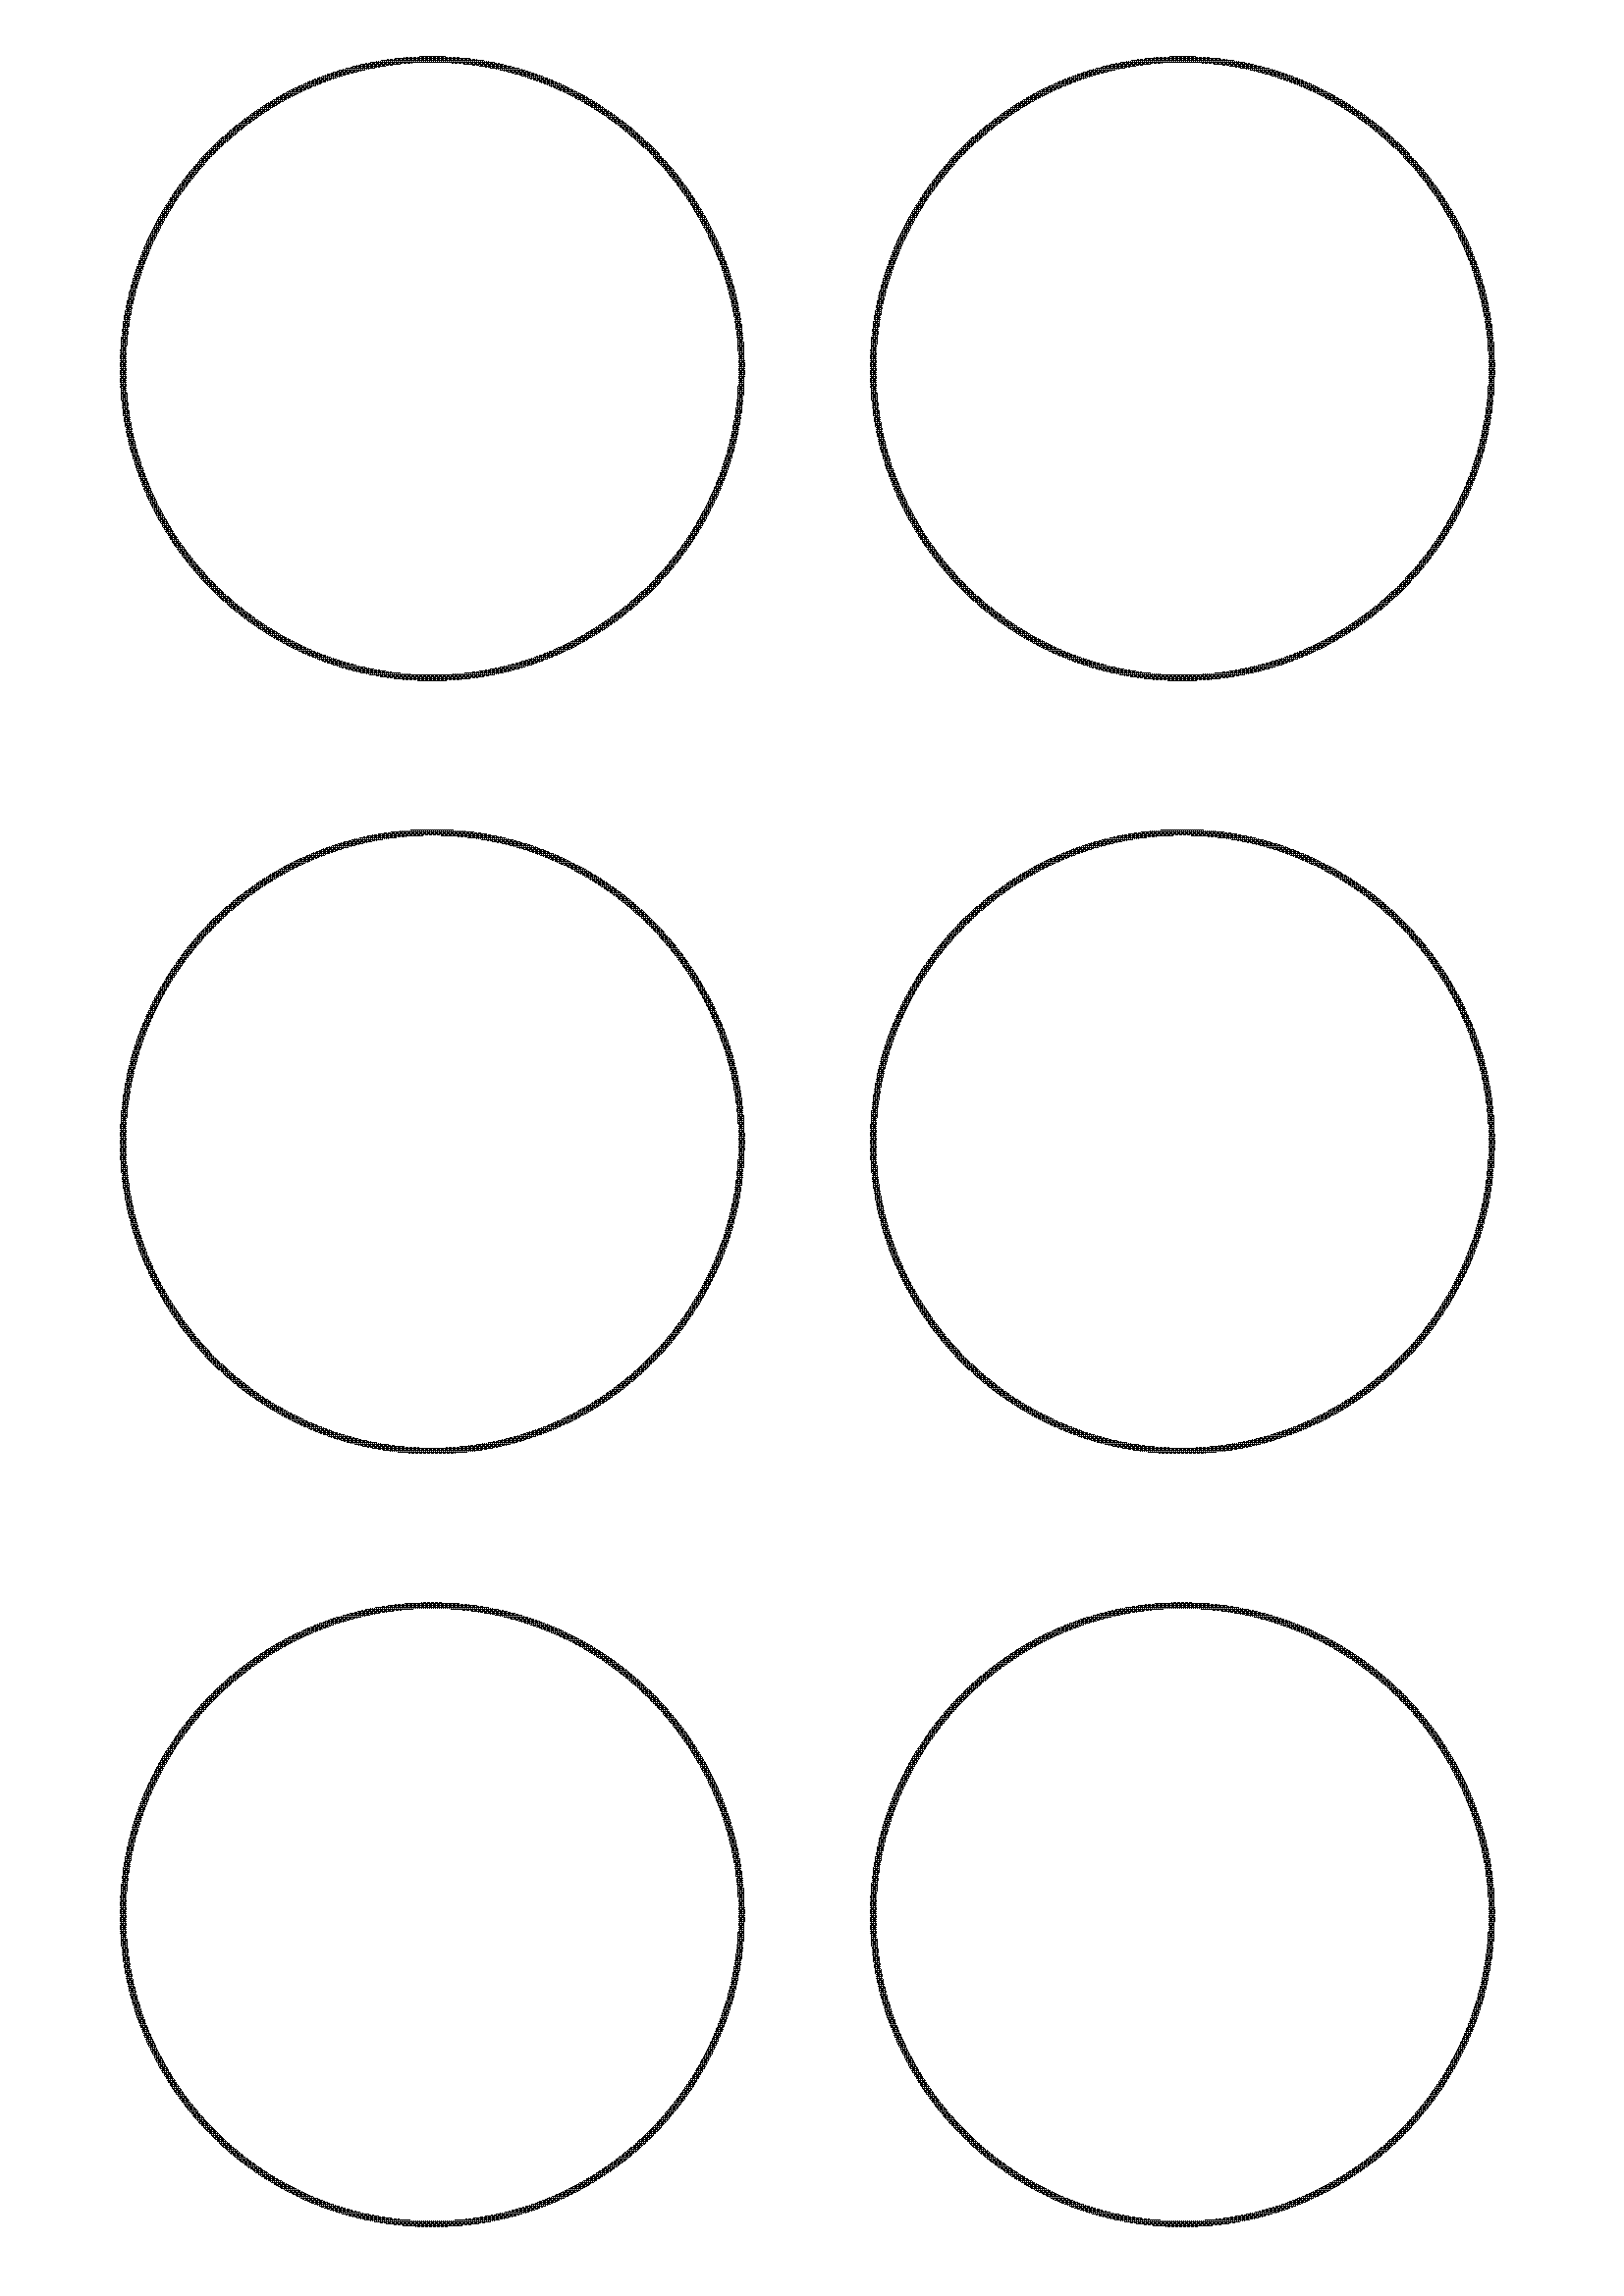 Все четыре круга одного размера диаметр. Круг для вырезания. Трафарет круги. Трафарет кругов разного размера. Кружочки для вырезки.